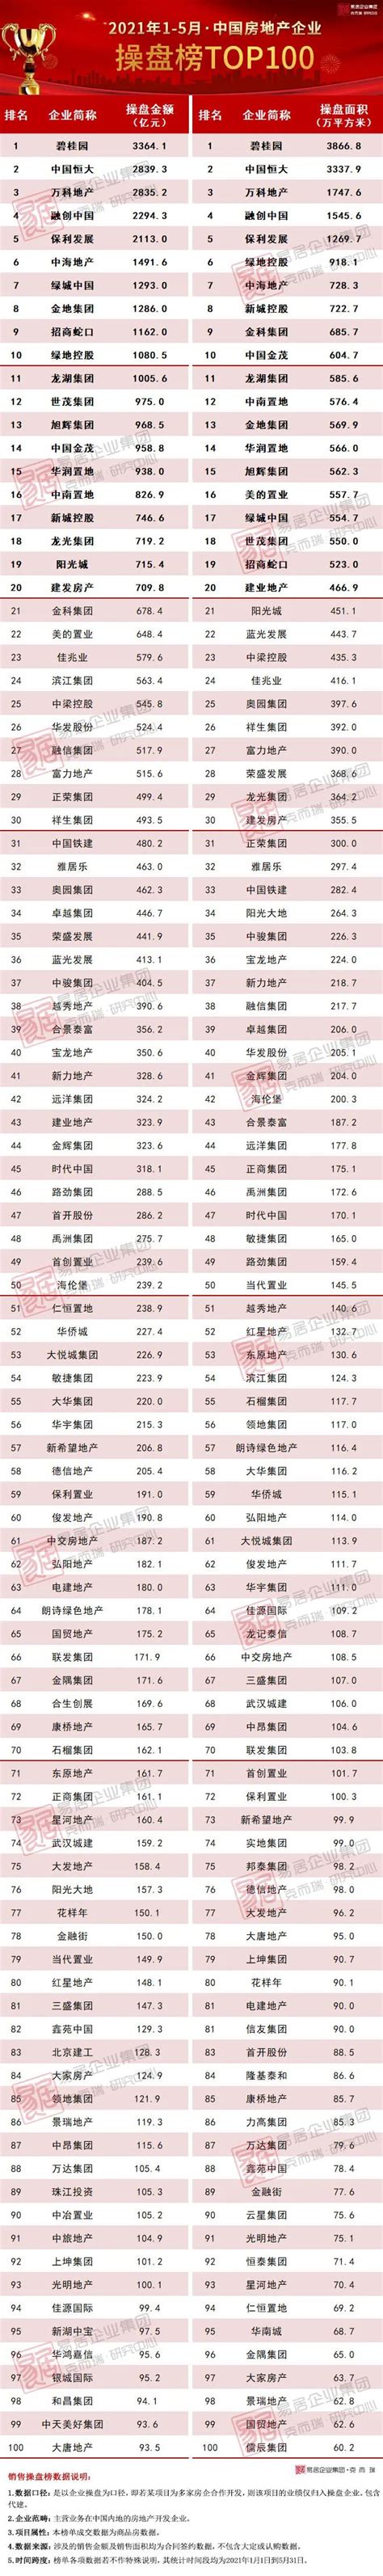 2021年1-5月中国房地产企业销售TOP100排行榜 | 资产界